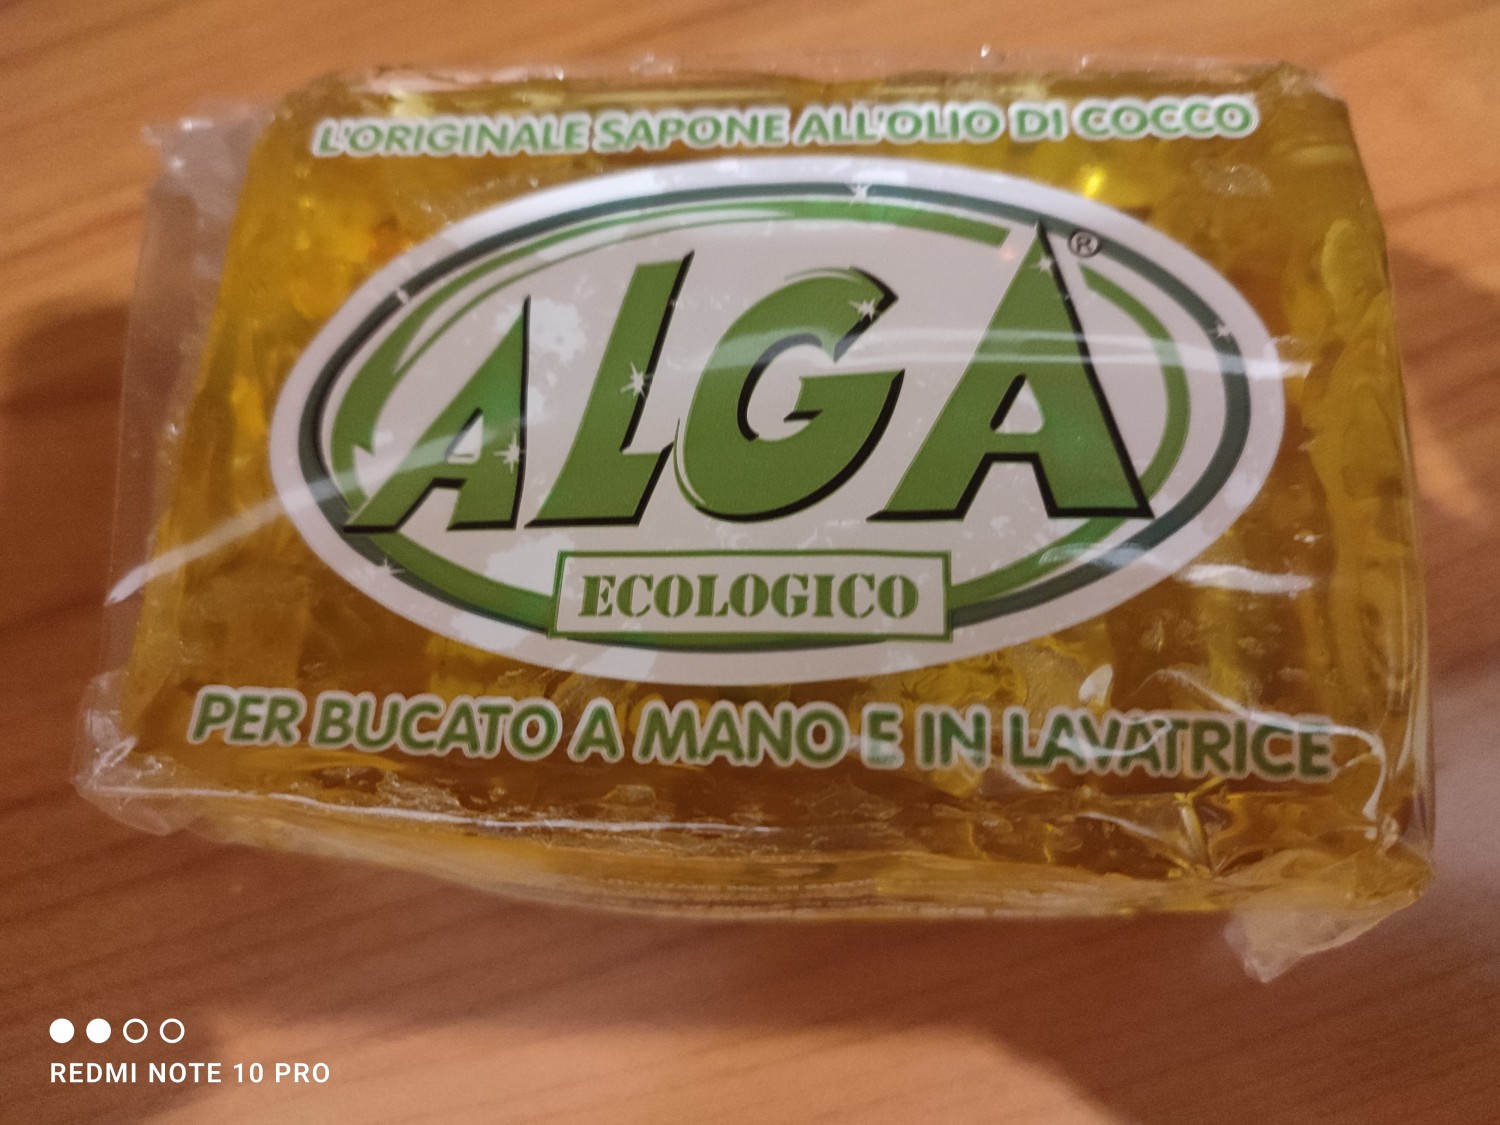 Sapone Alga ecologico biodegradabile all'olio di cocco per bucato